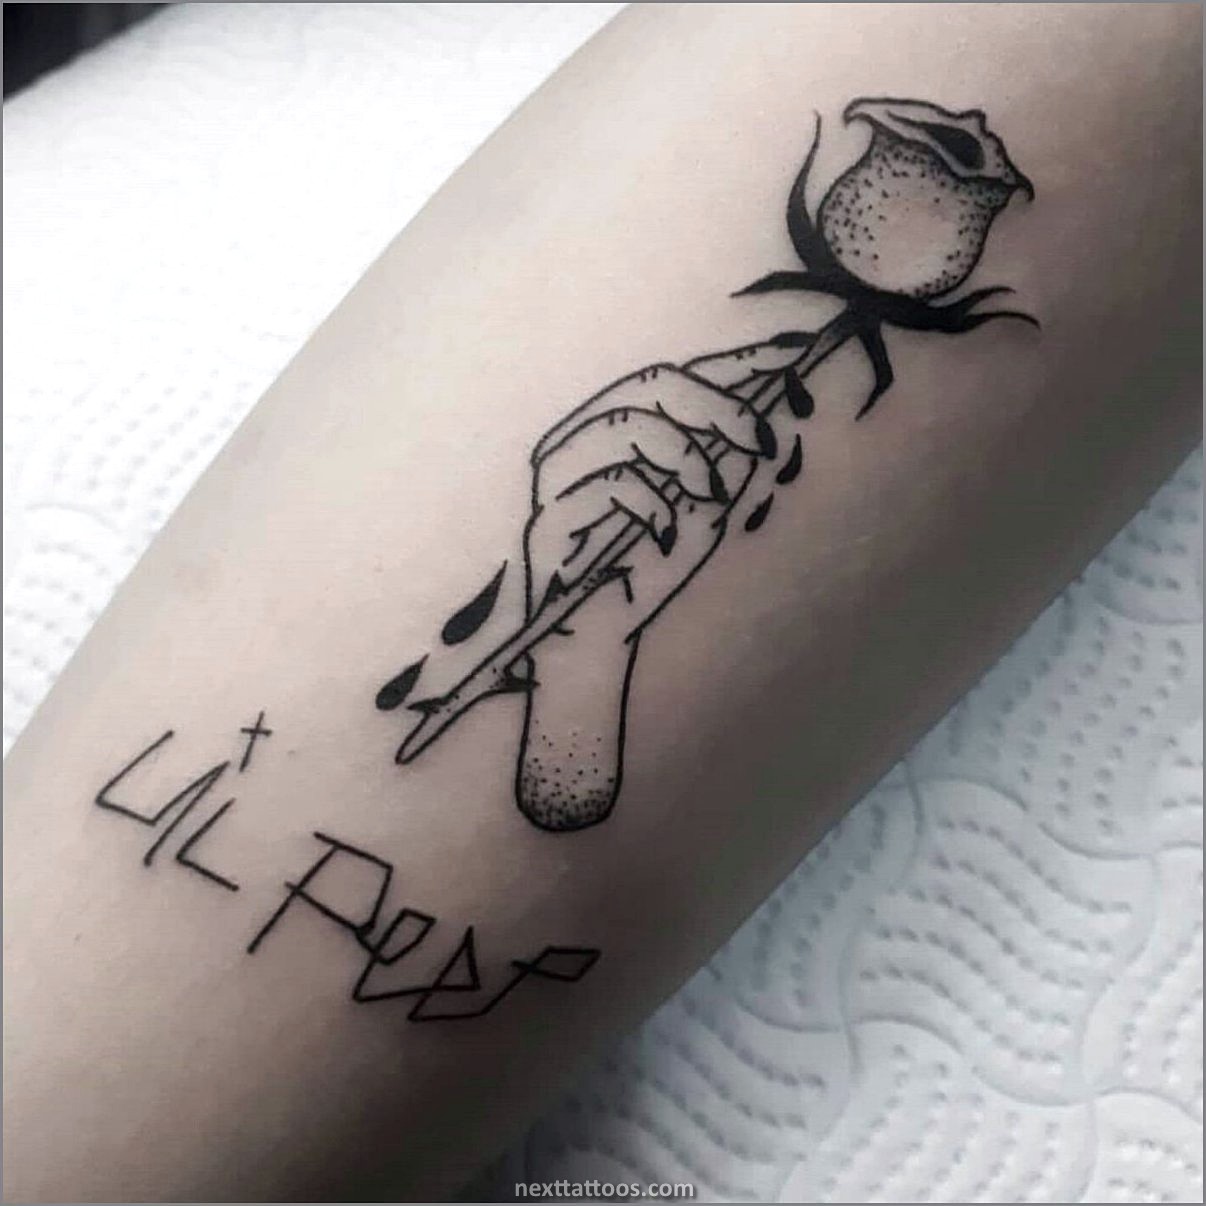 Lil Peep Tattoos Ideas